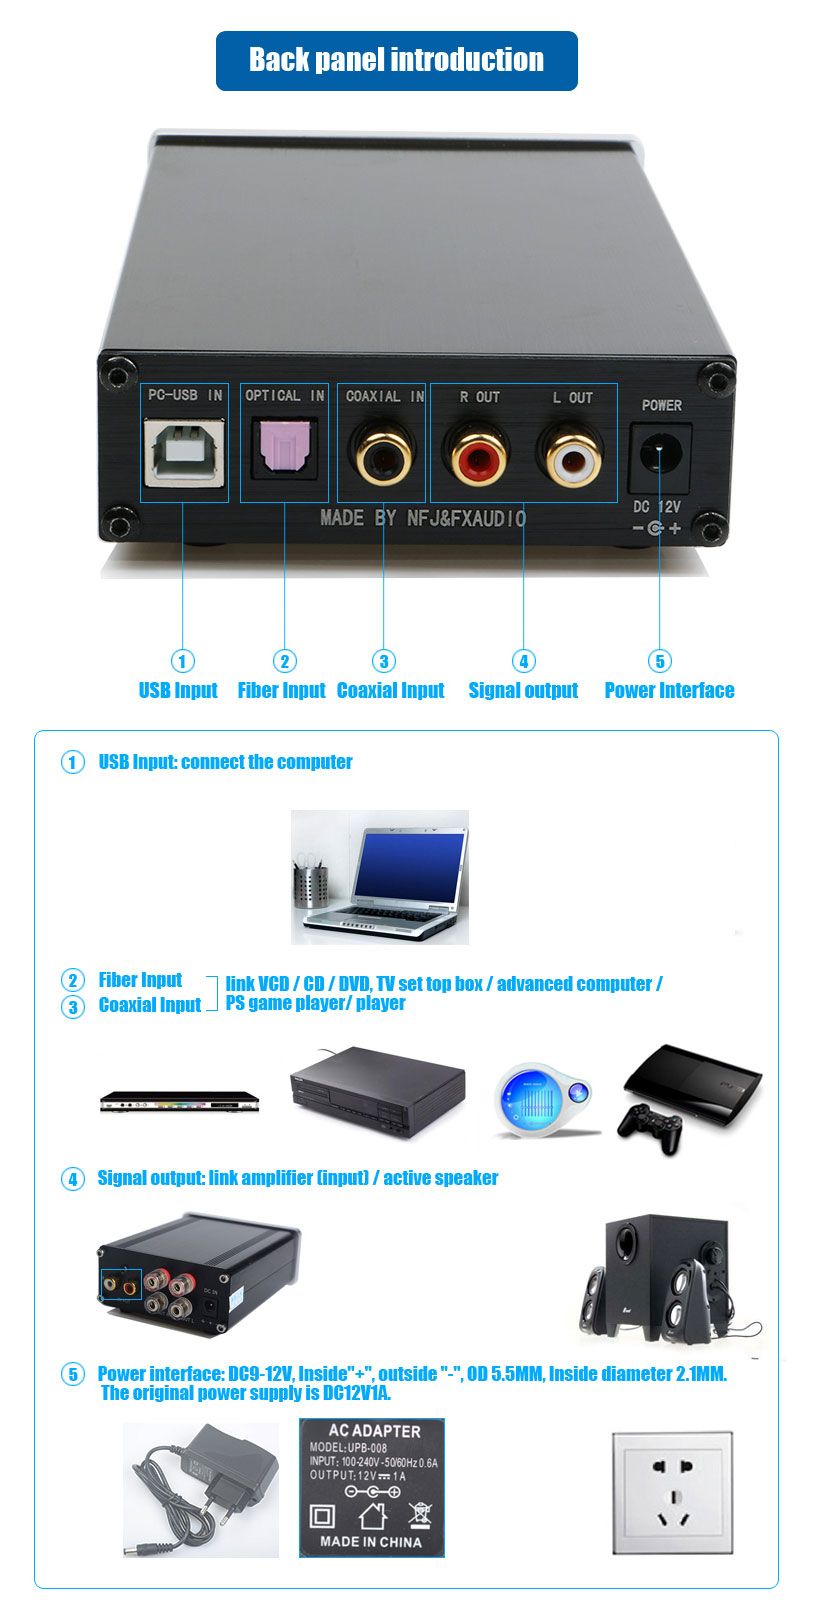 FX-Audio-DAC-X6-DAC-24BIT192-HiFi-Amplifier-1116991